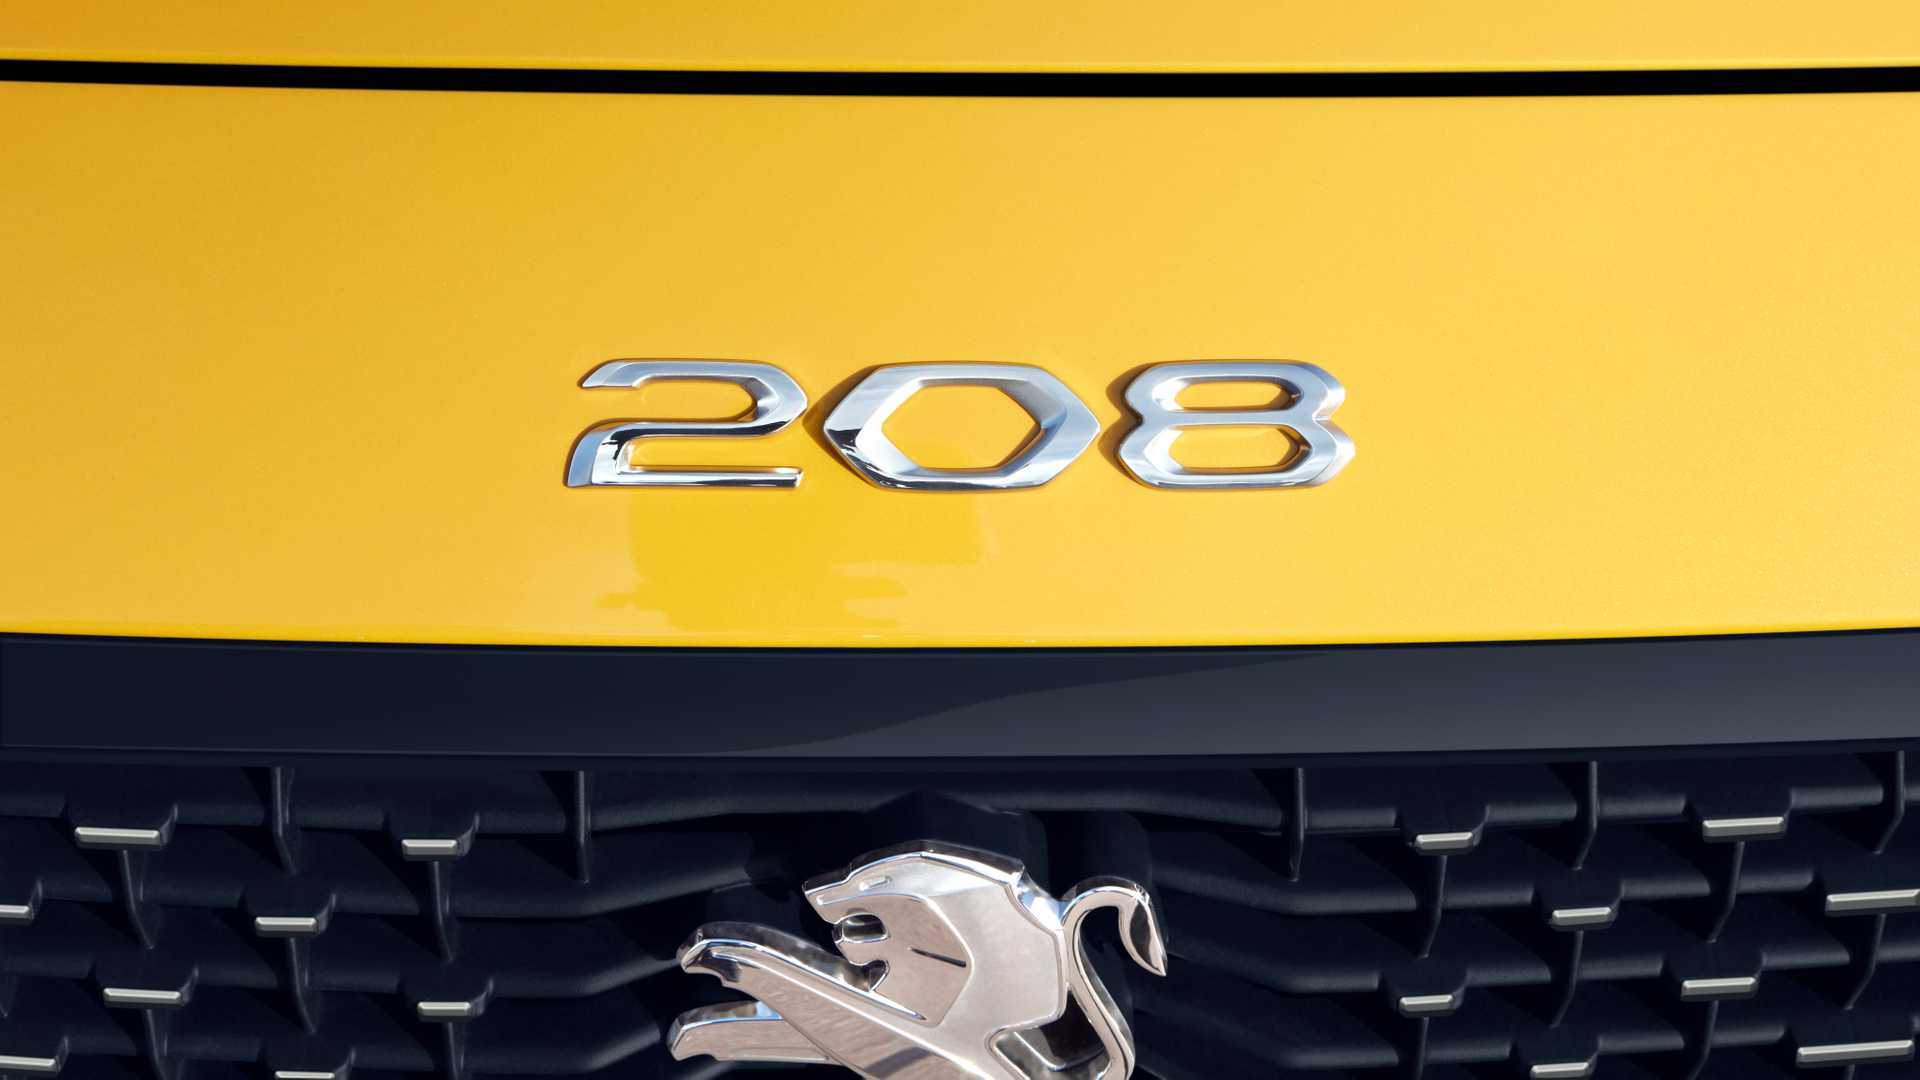 21-پژو 208 جدید بصورت رسمی معرفی شد